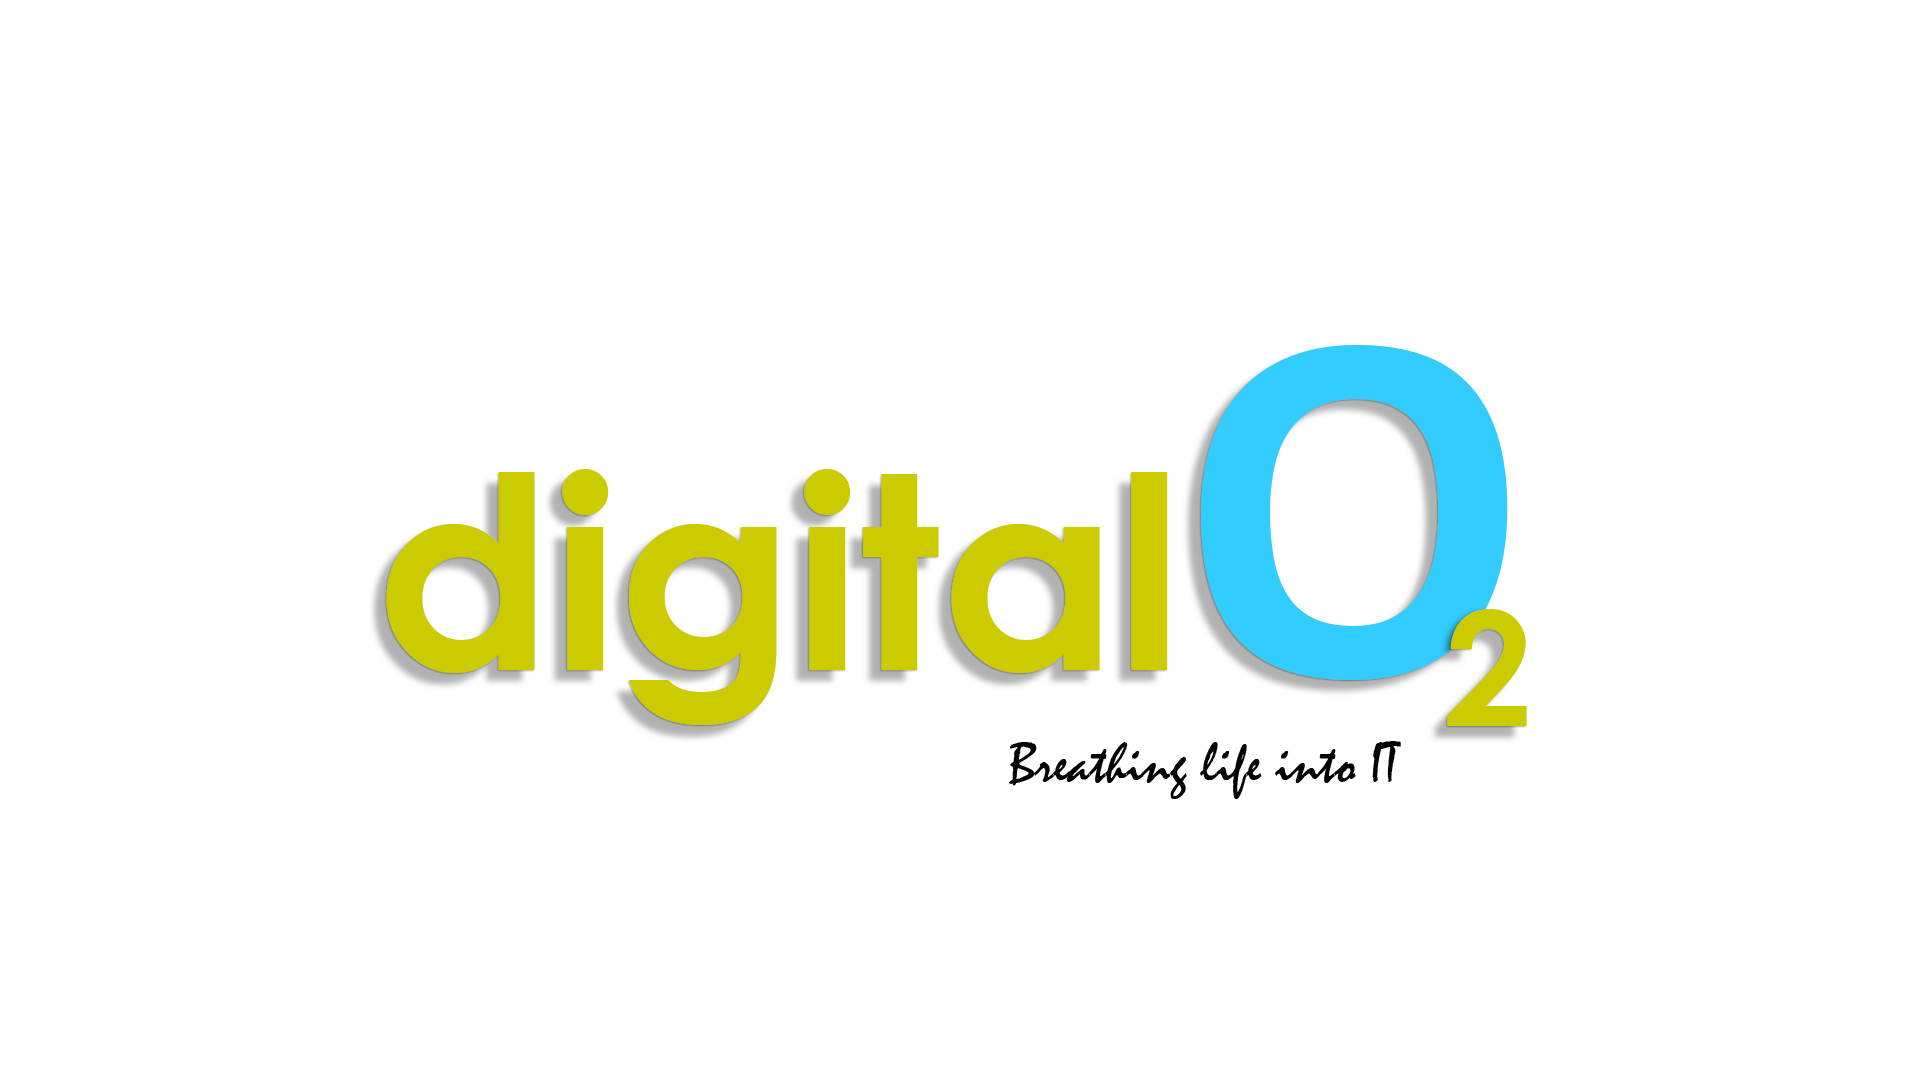 Digital O2